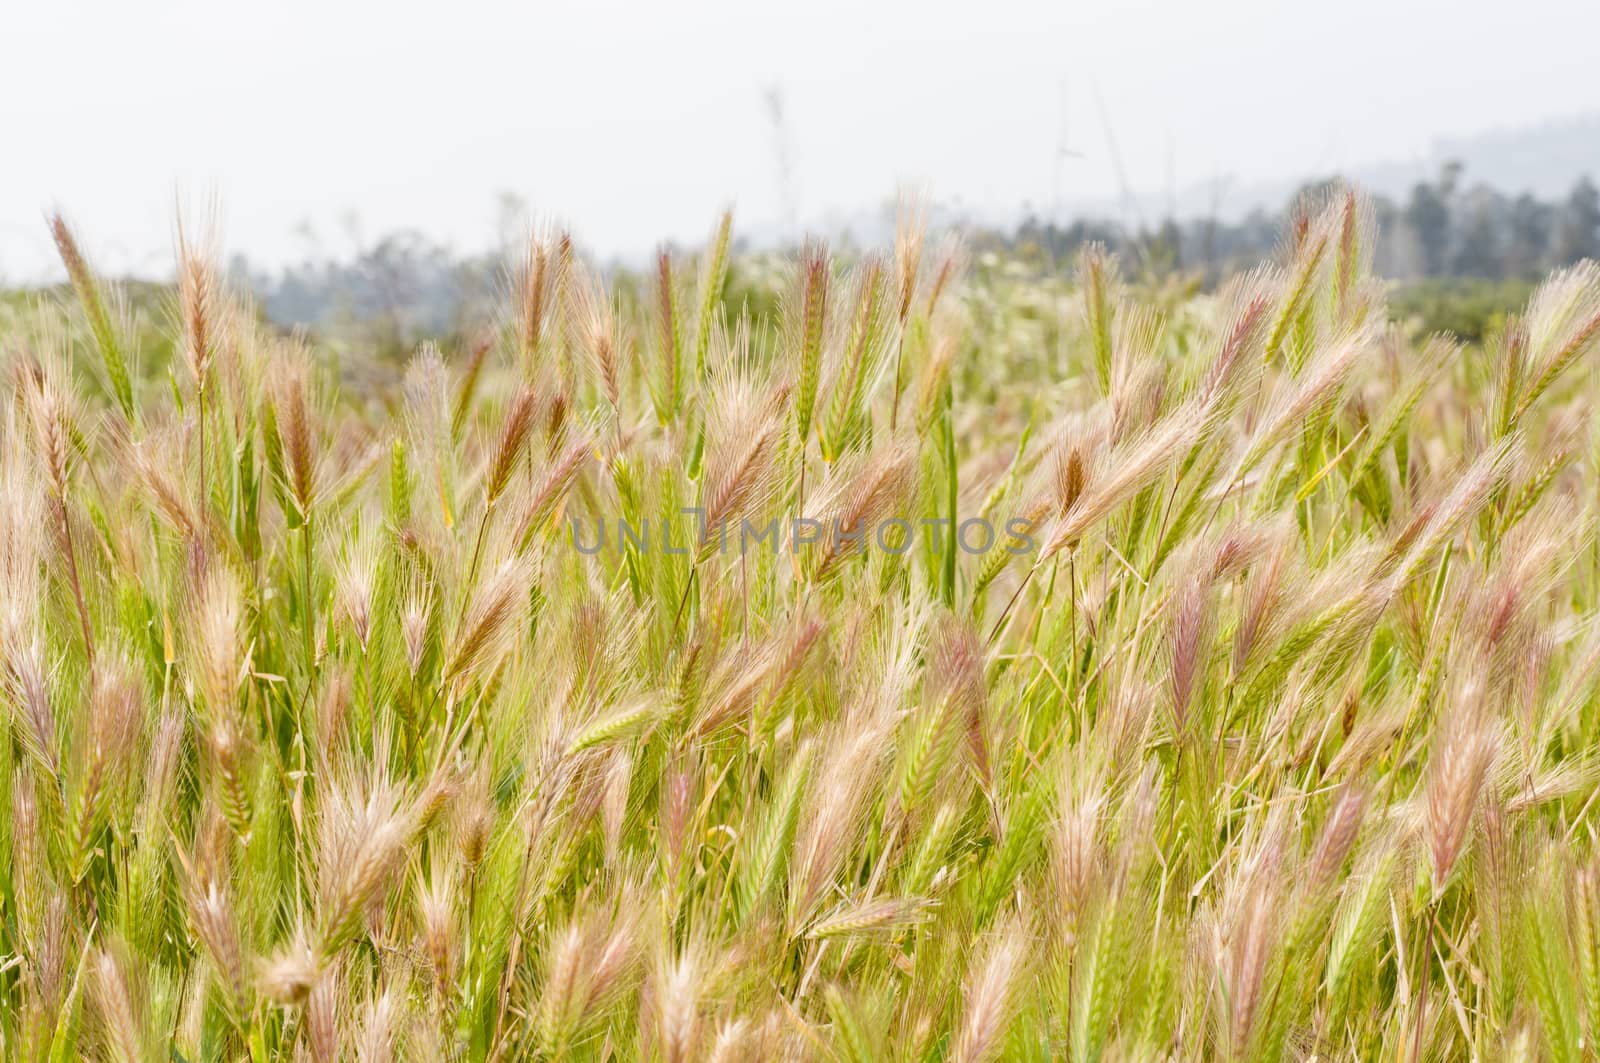 Wild wheat (Triticum) by Njean